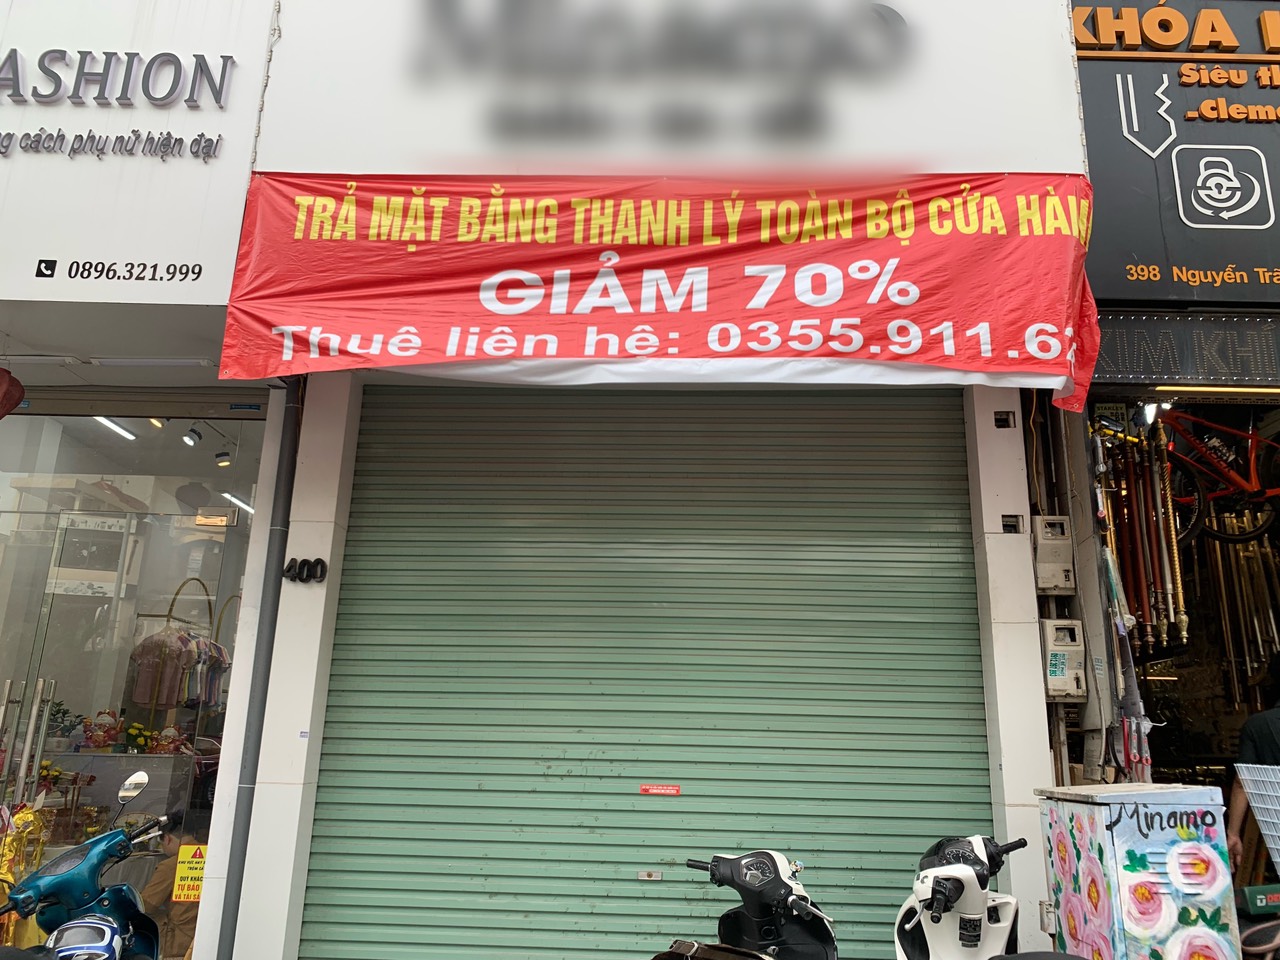 Hà Nội: Bán hàng ế ẩm, nhiều chủ cửa hàng trả mặt bằng kinh doanh - Ảnh 3.